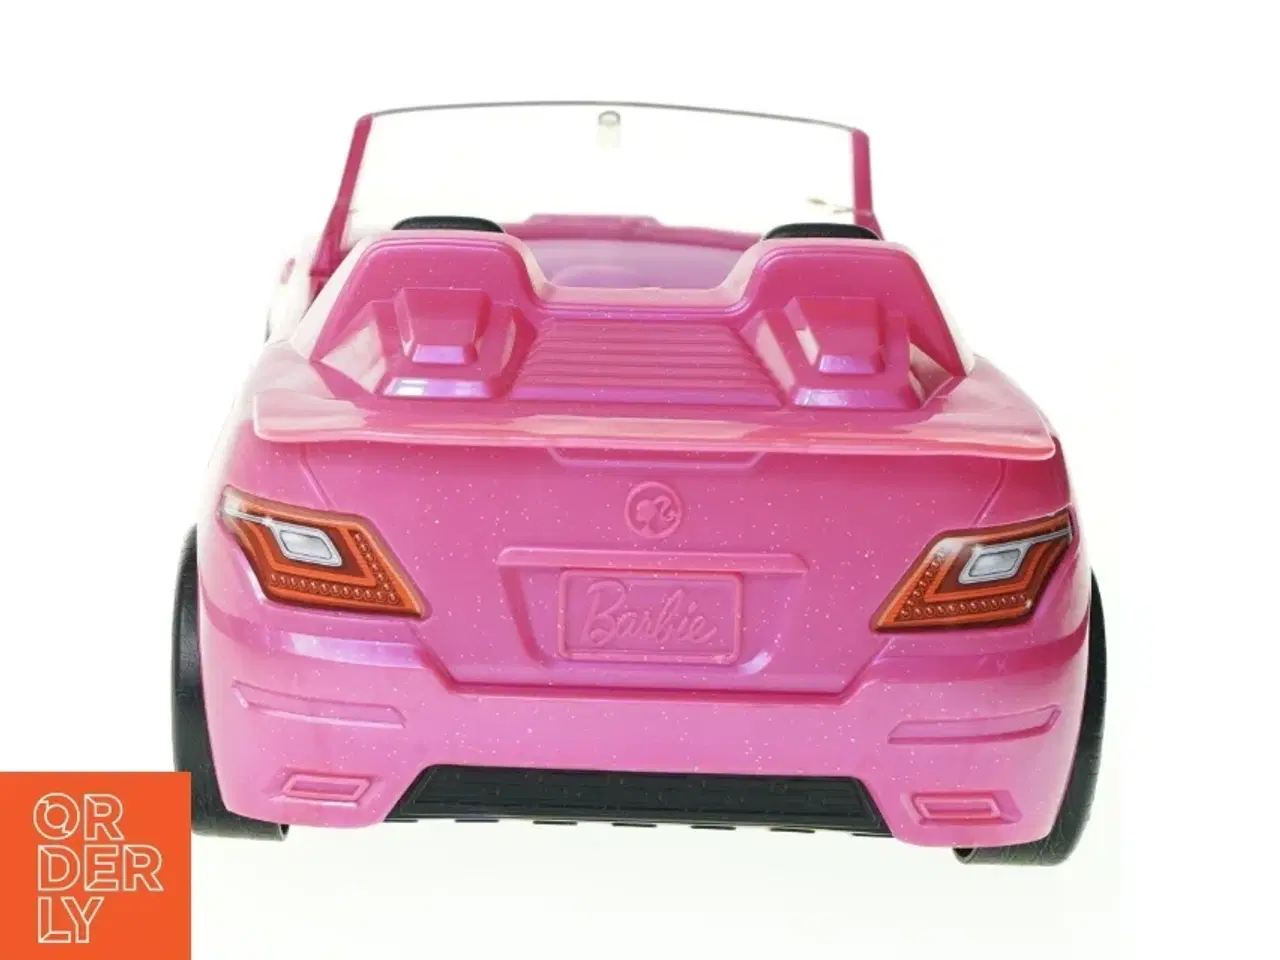 Billede 2 - Barbie bil fra Mattel (str. 33 x 20 x 12 cm)